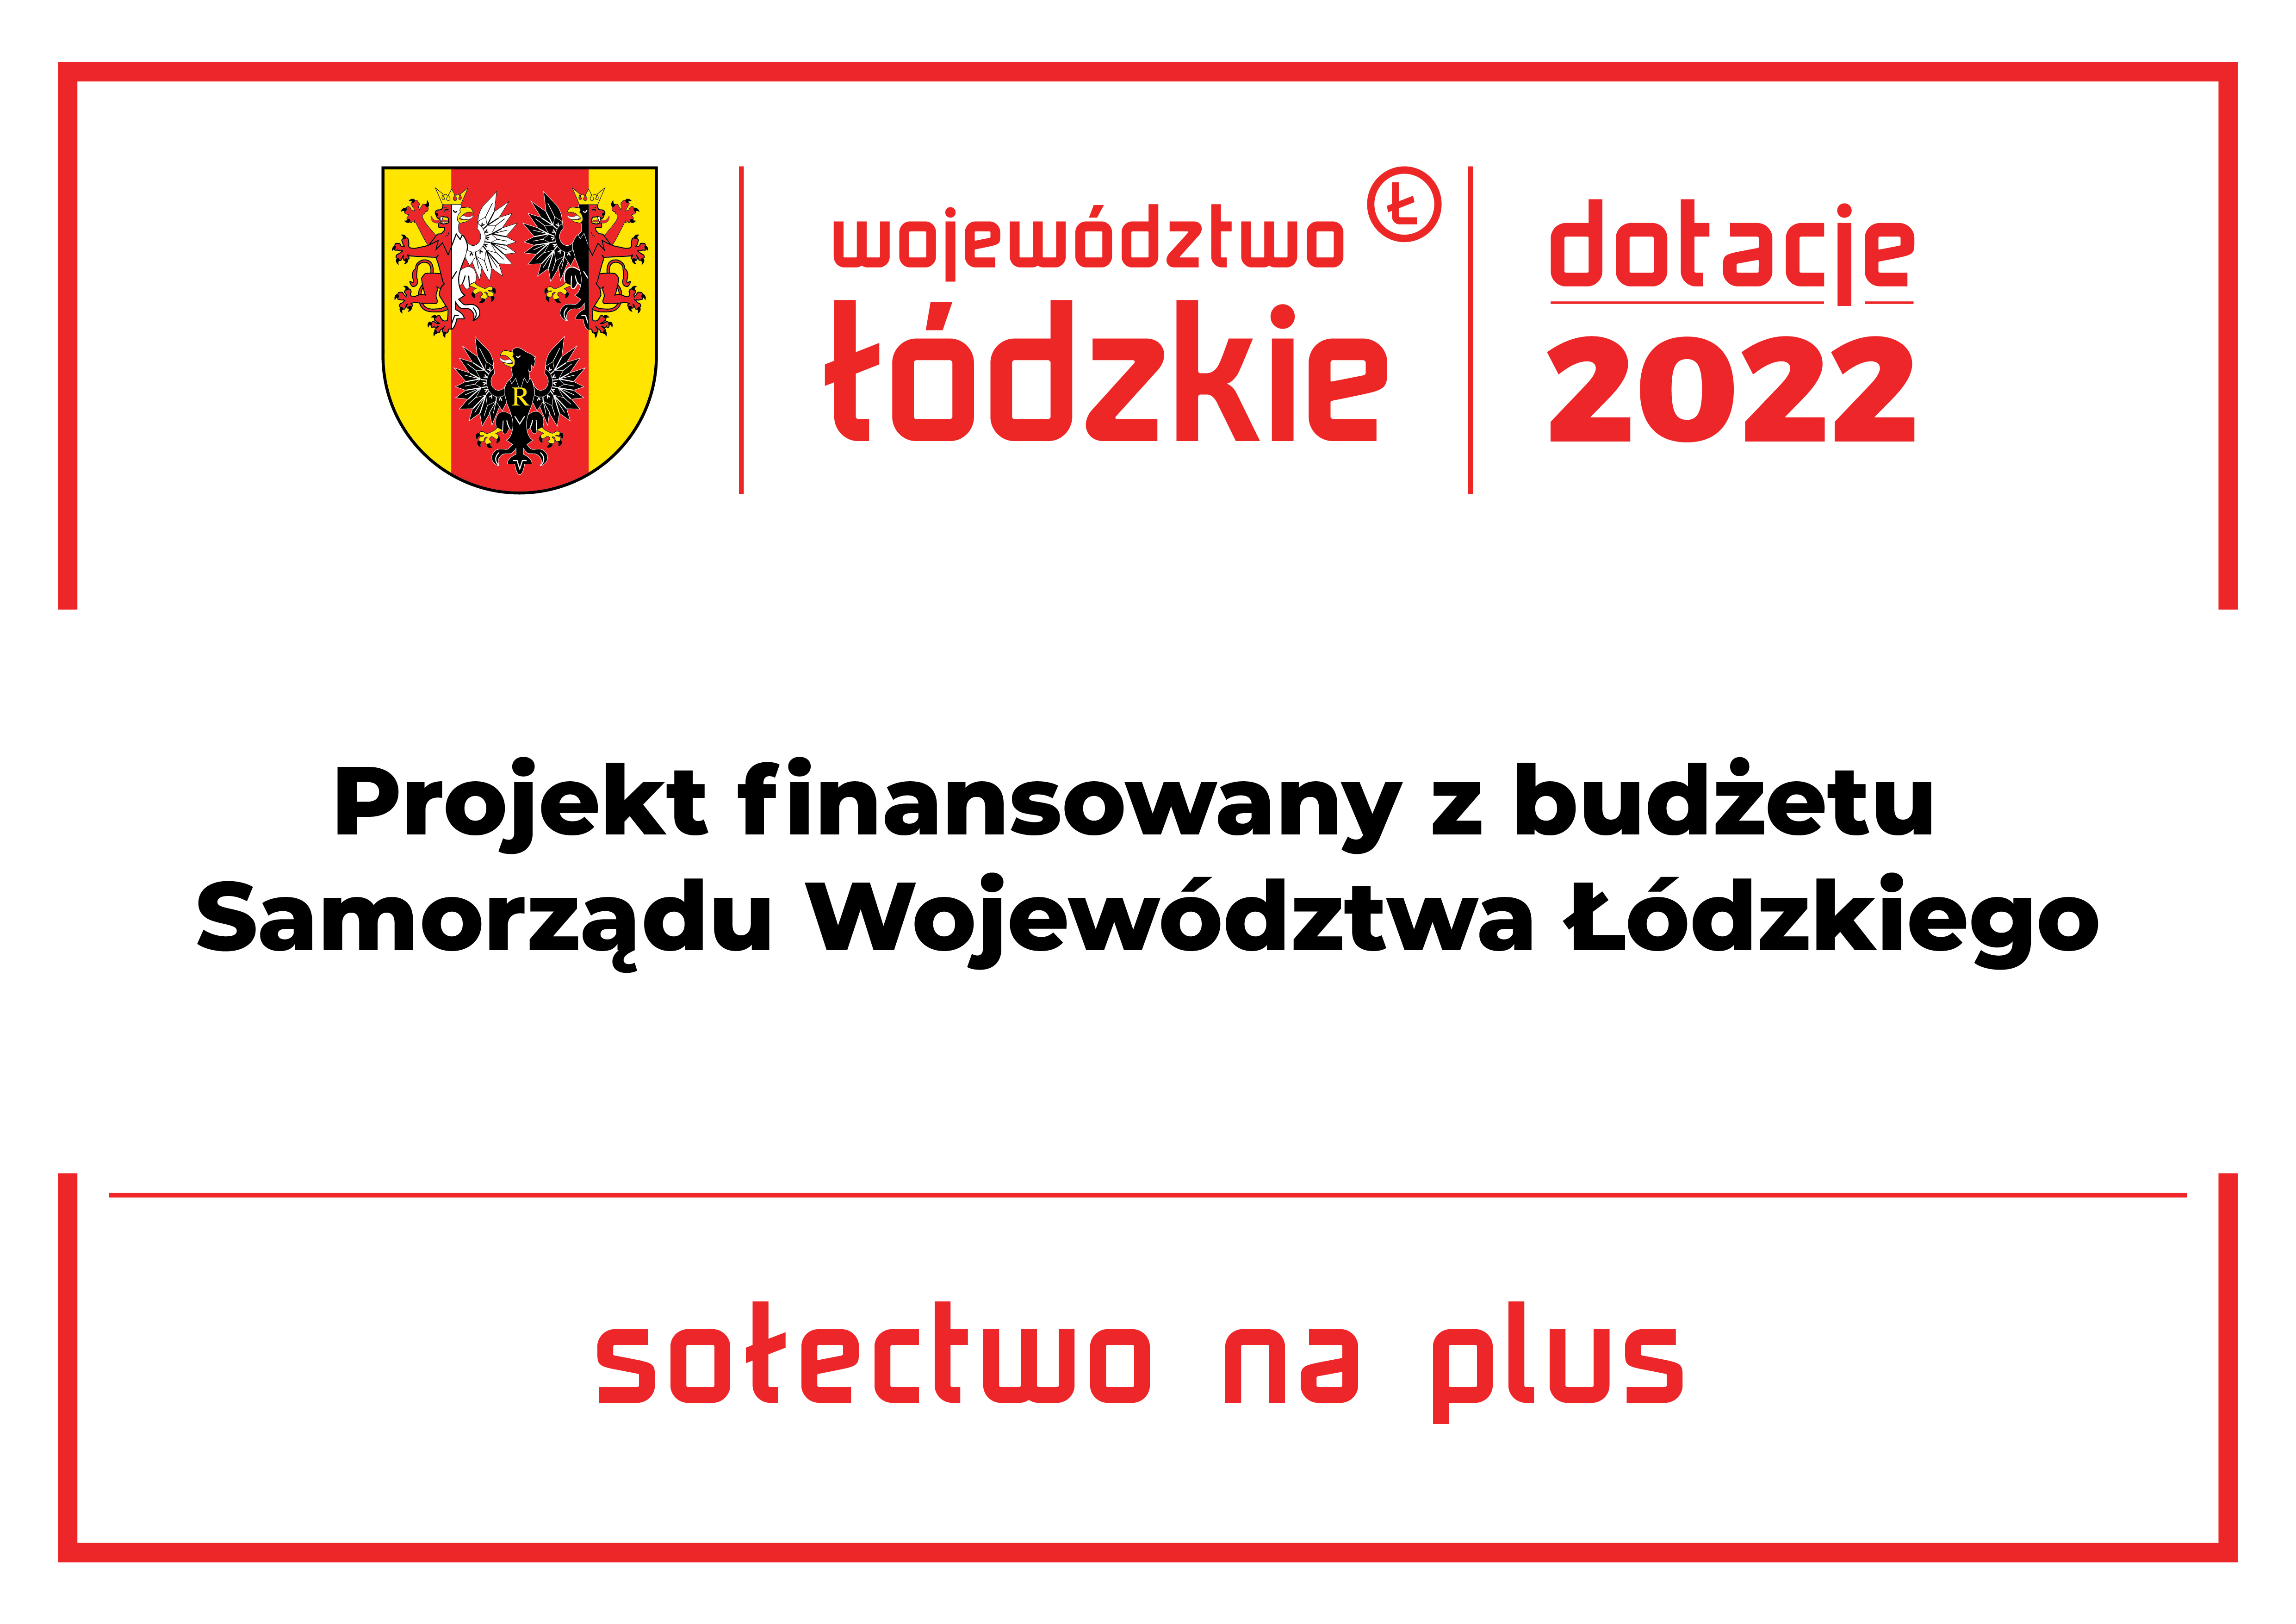 tablice sołeckie sołectwo na plus 2022 04.03 1 2